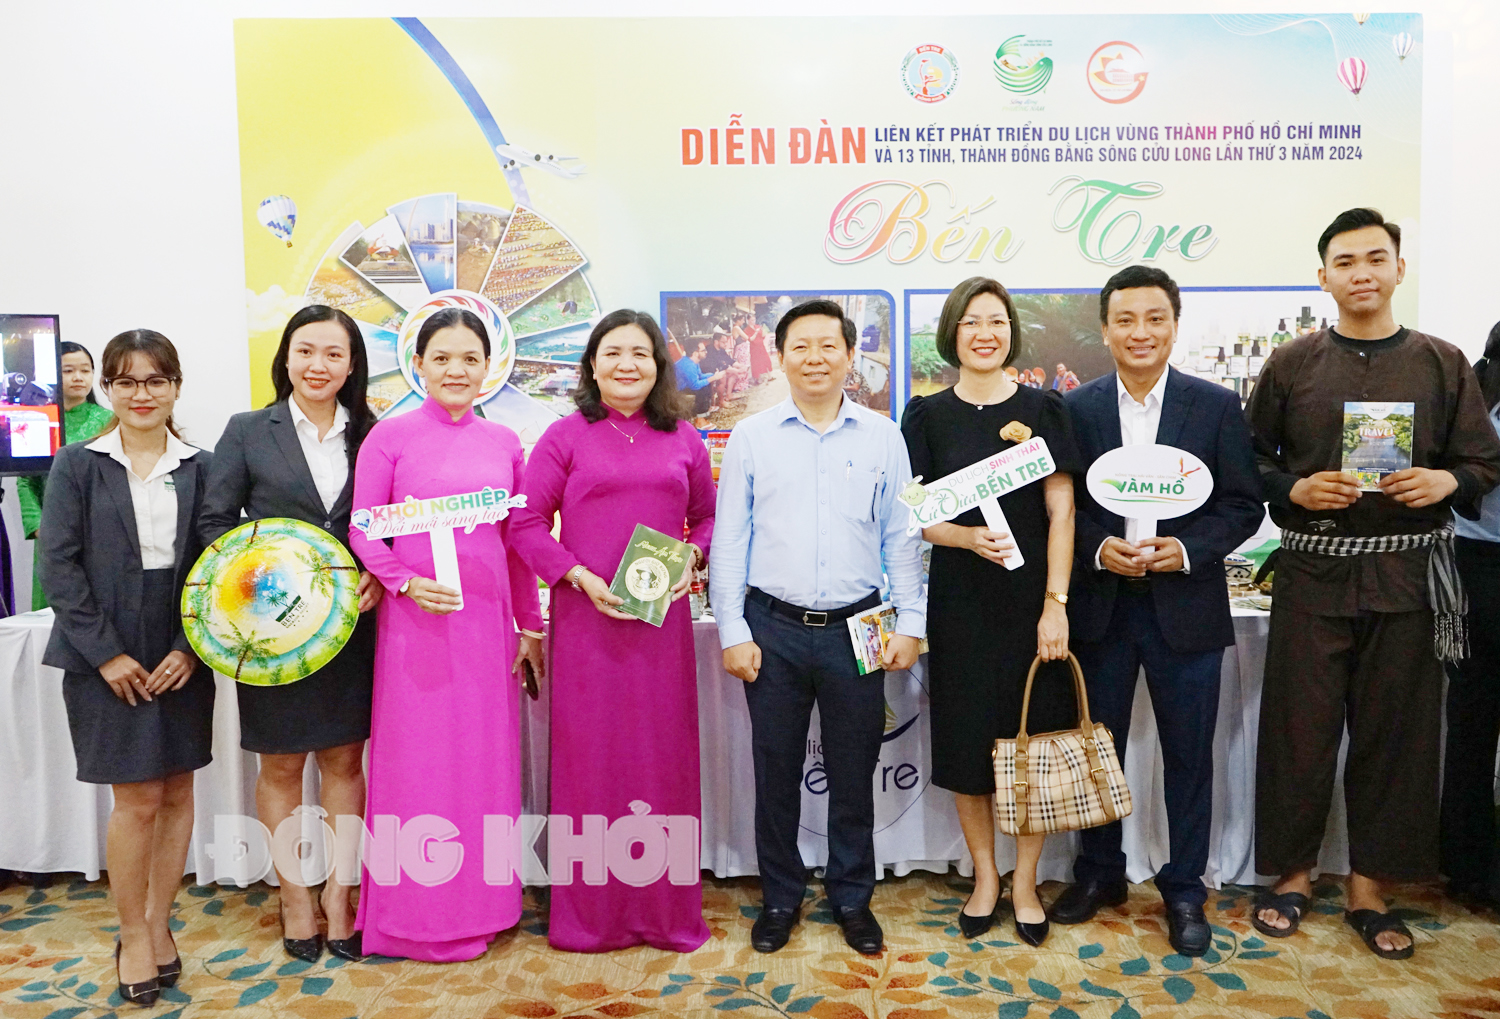 Diễn đàn Liên kết phát triển du lịch vùng TP. Hồ Chí Minh và 13 tỉnh,  thành đồng bằng sông Cửu Long lần 3 năm 2024